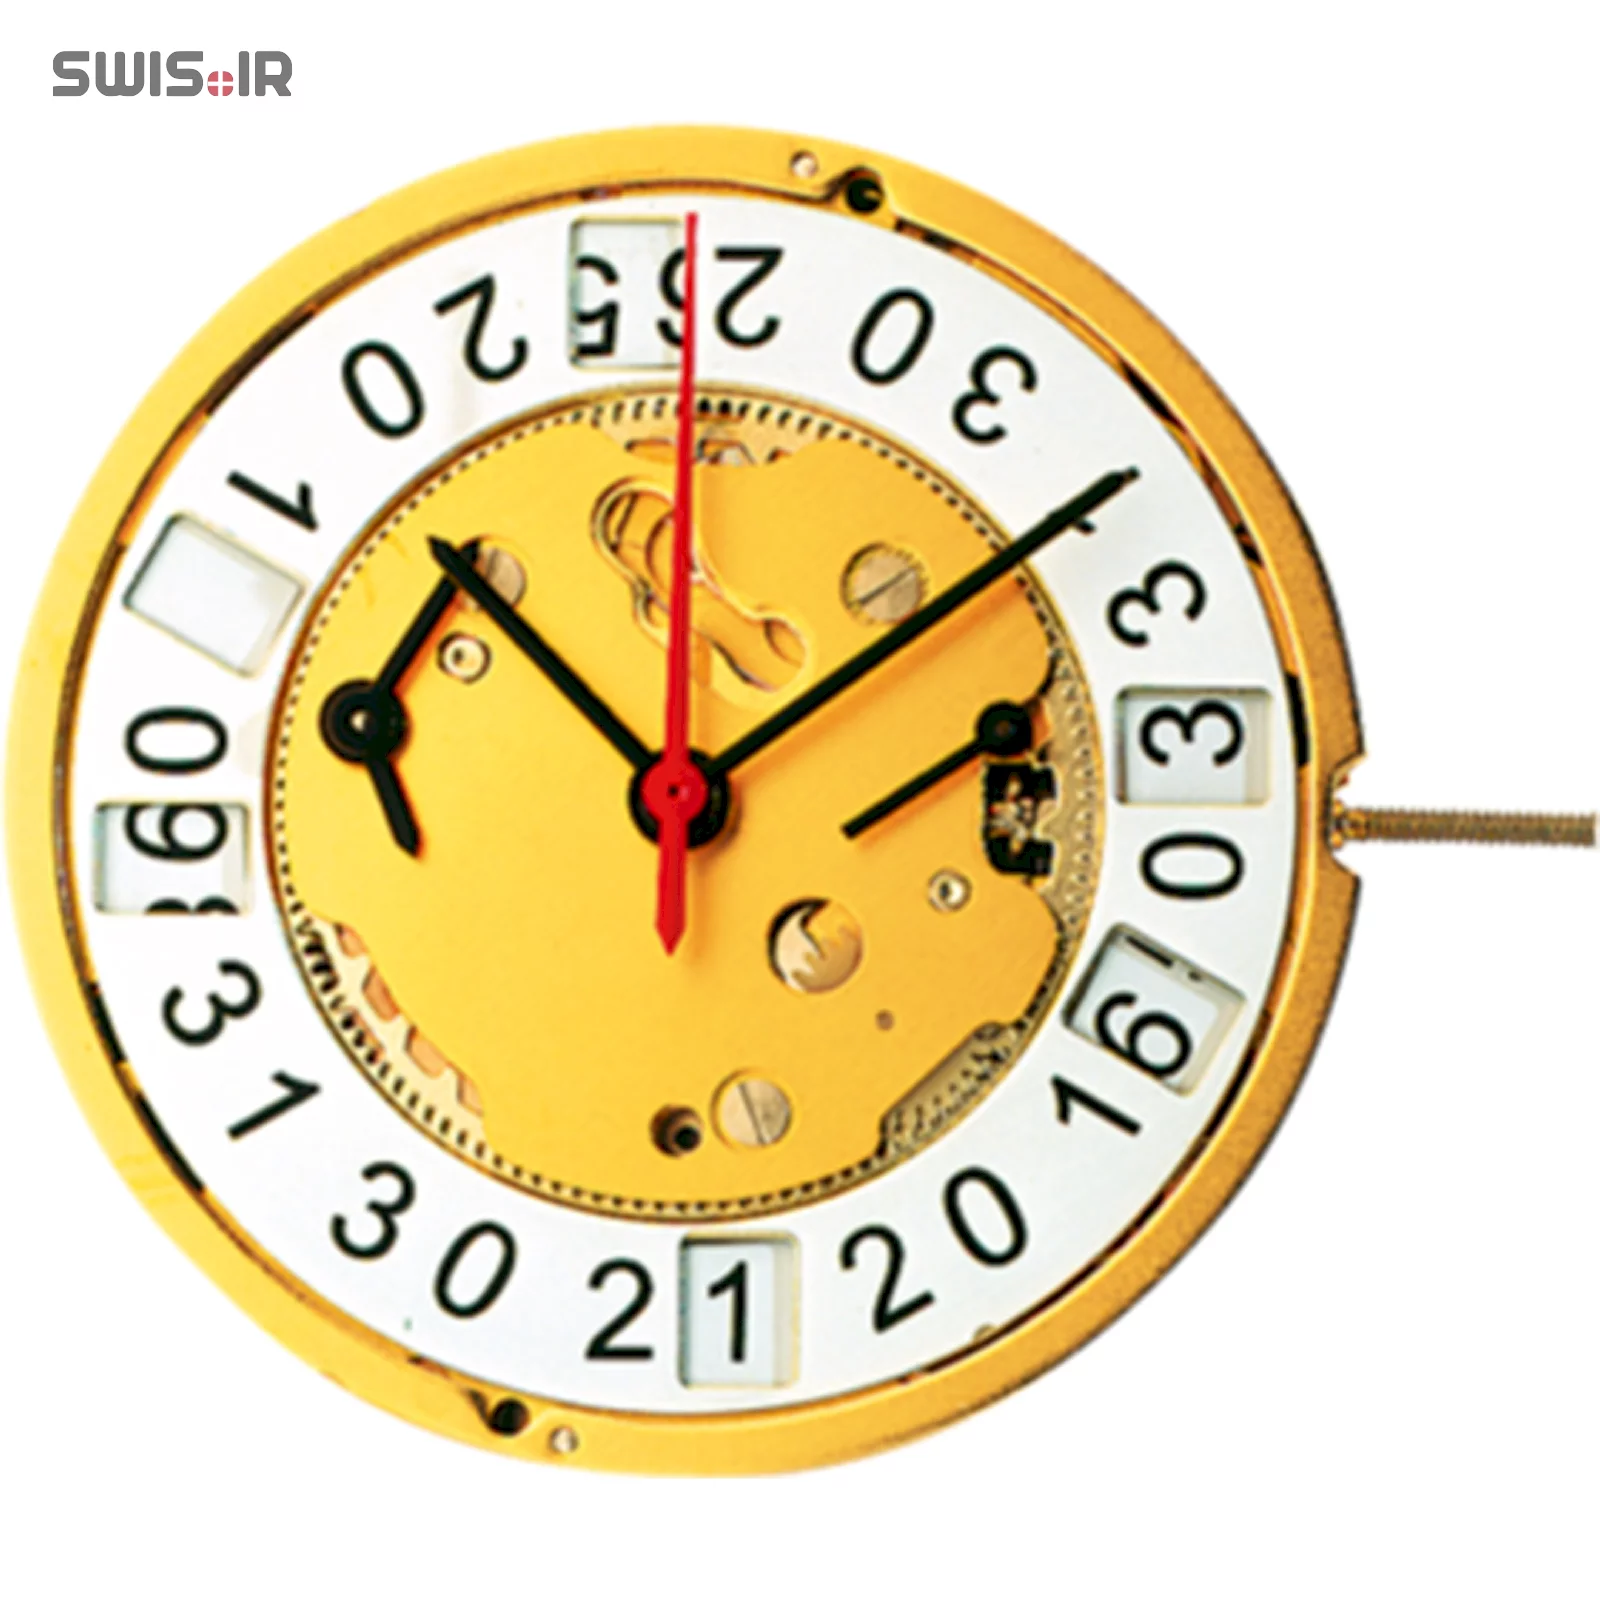 تصویر روی موتور ساعت کالیبر 5020.B ساخت شرکت روندا سوئیس